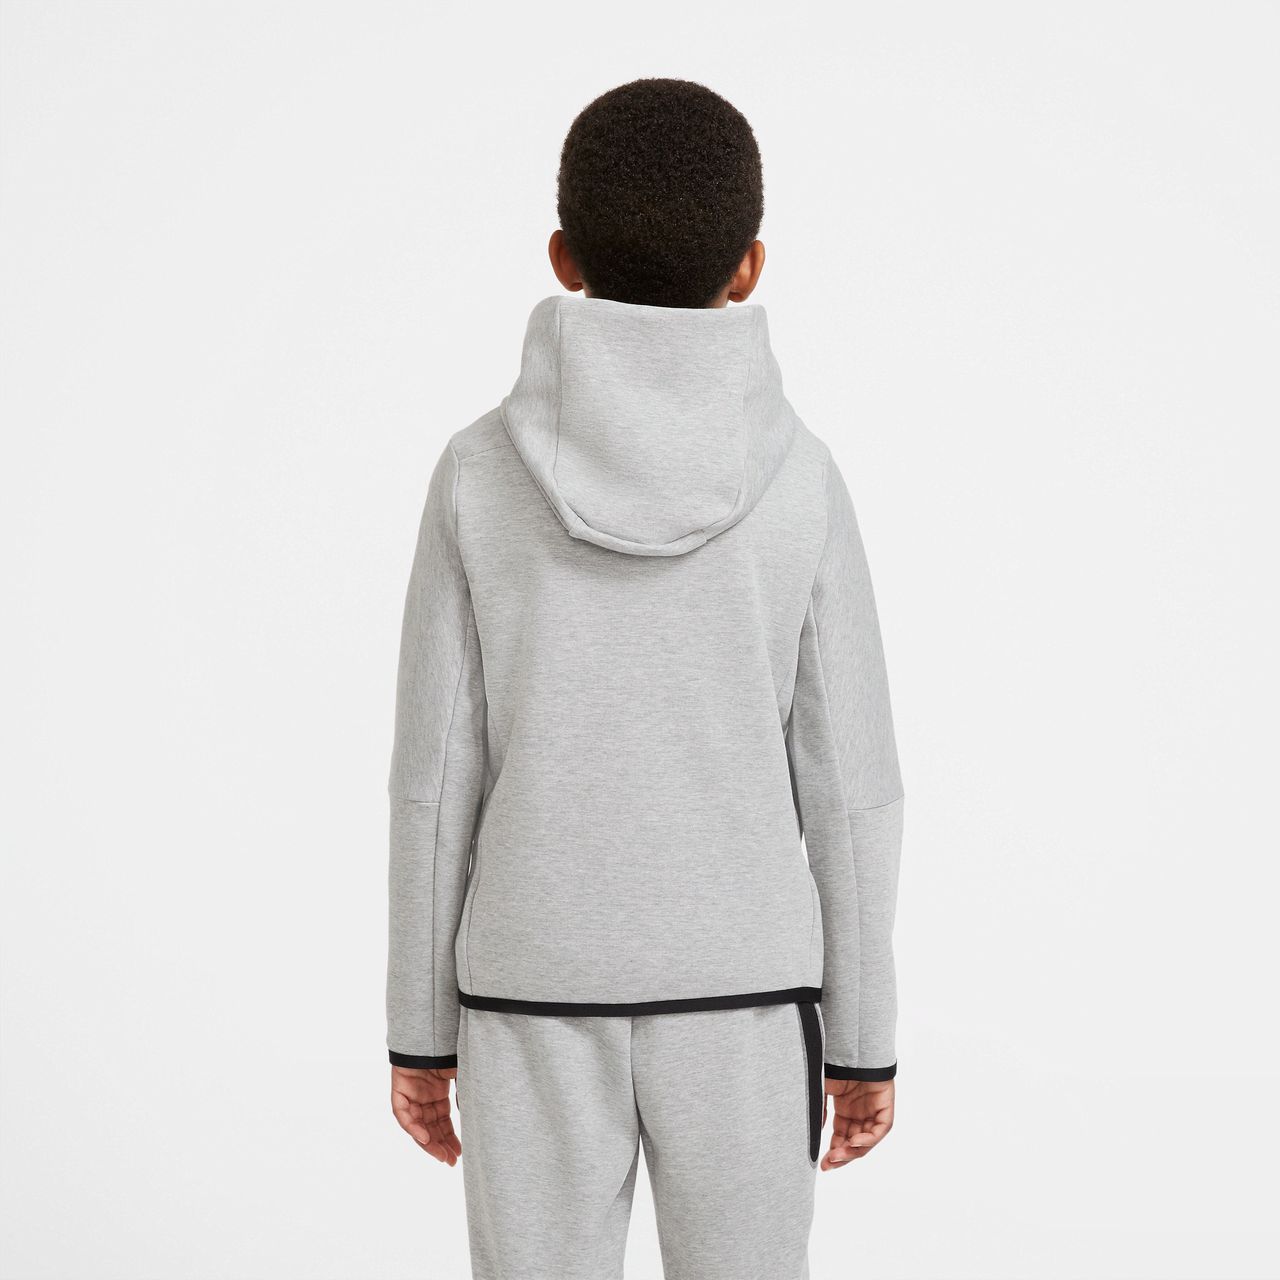 Nike Sportswear Tech Fleece Hoodie mit durchgehendem Reißverschluss für ältere Kinder (Jungen) - Grau